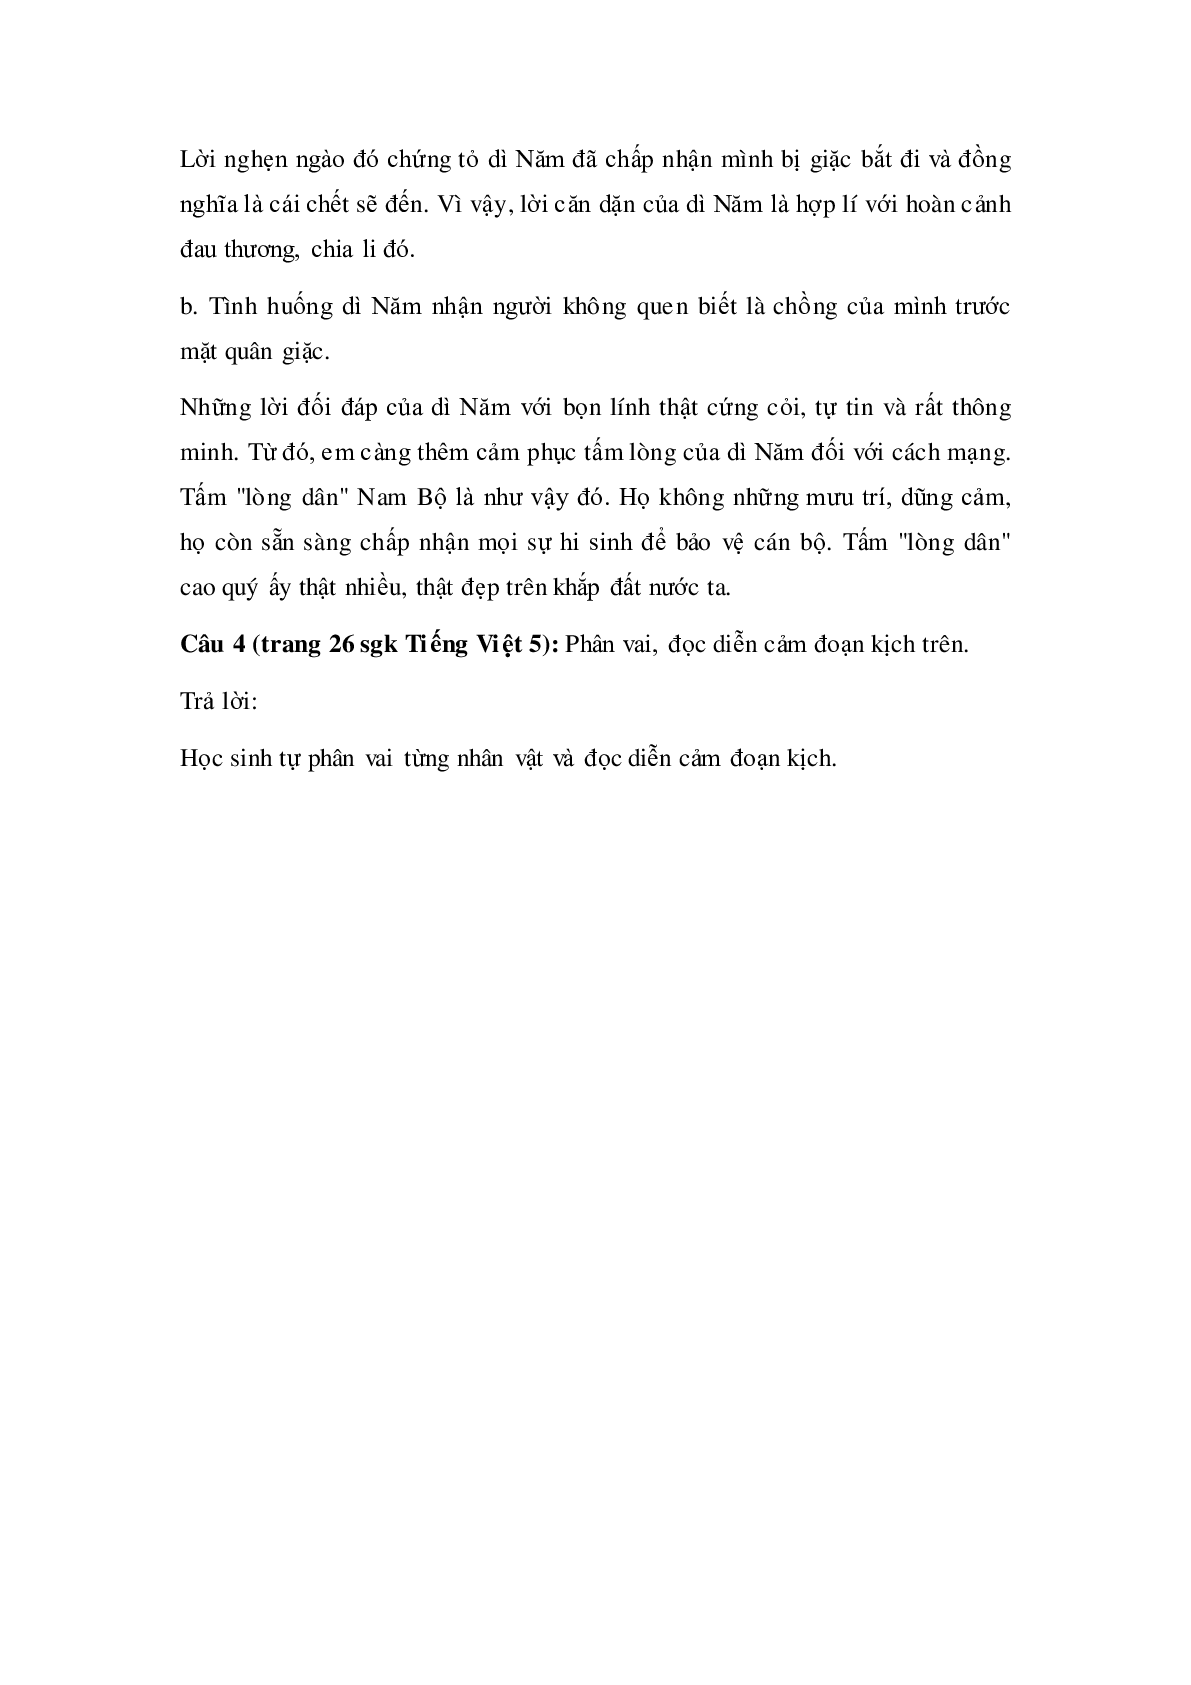 Soạn Tiếng Việt lớp 5: Tập đọc: Lòng dân mới nhất (trang 4)